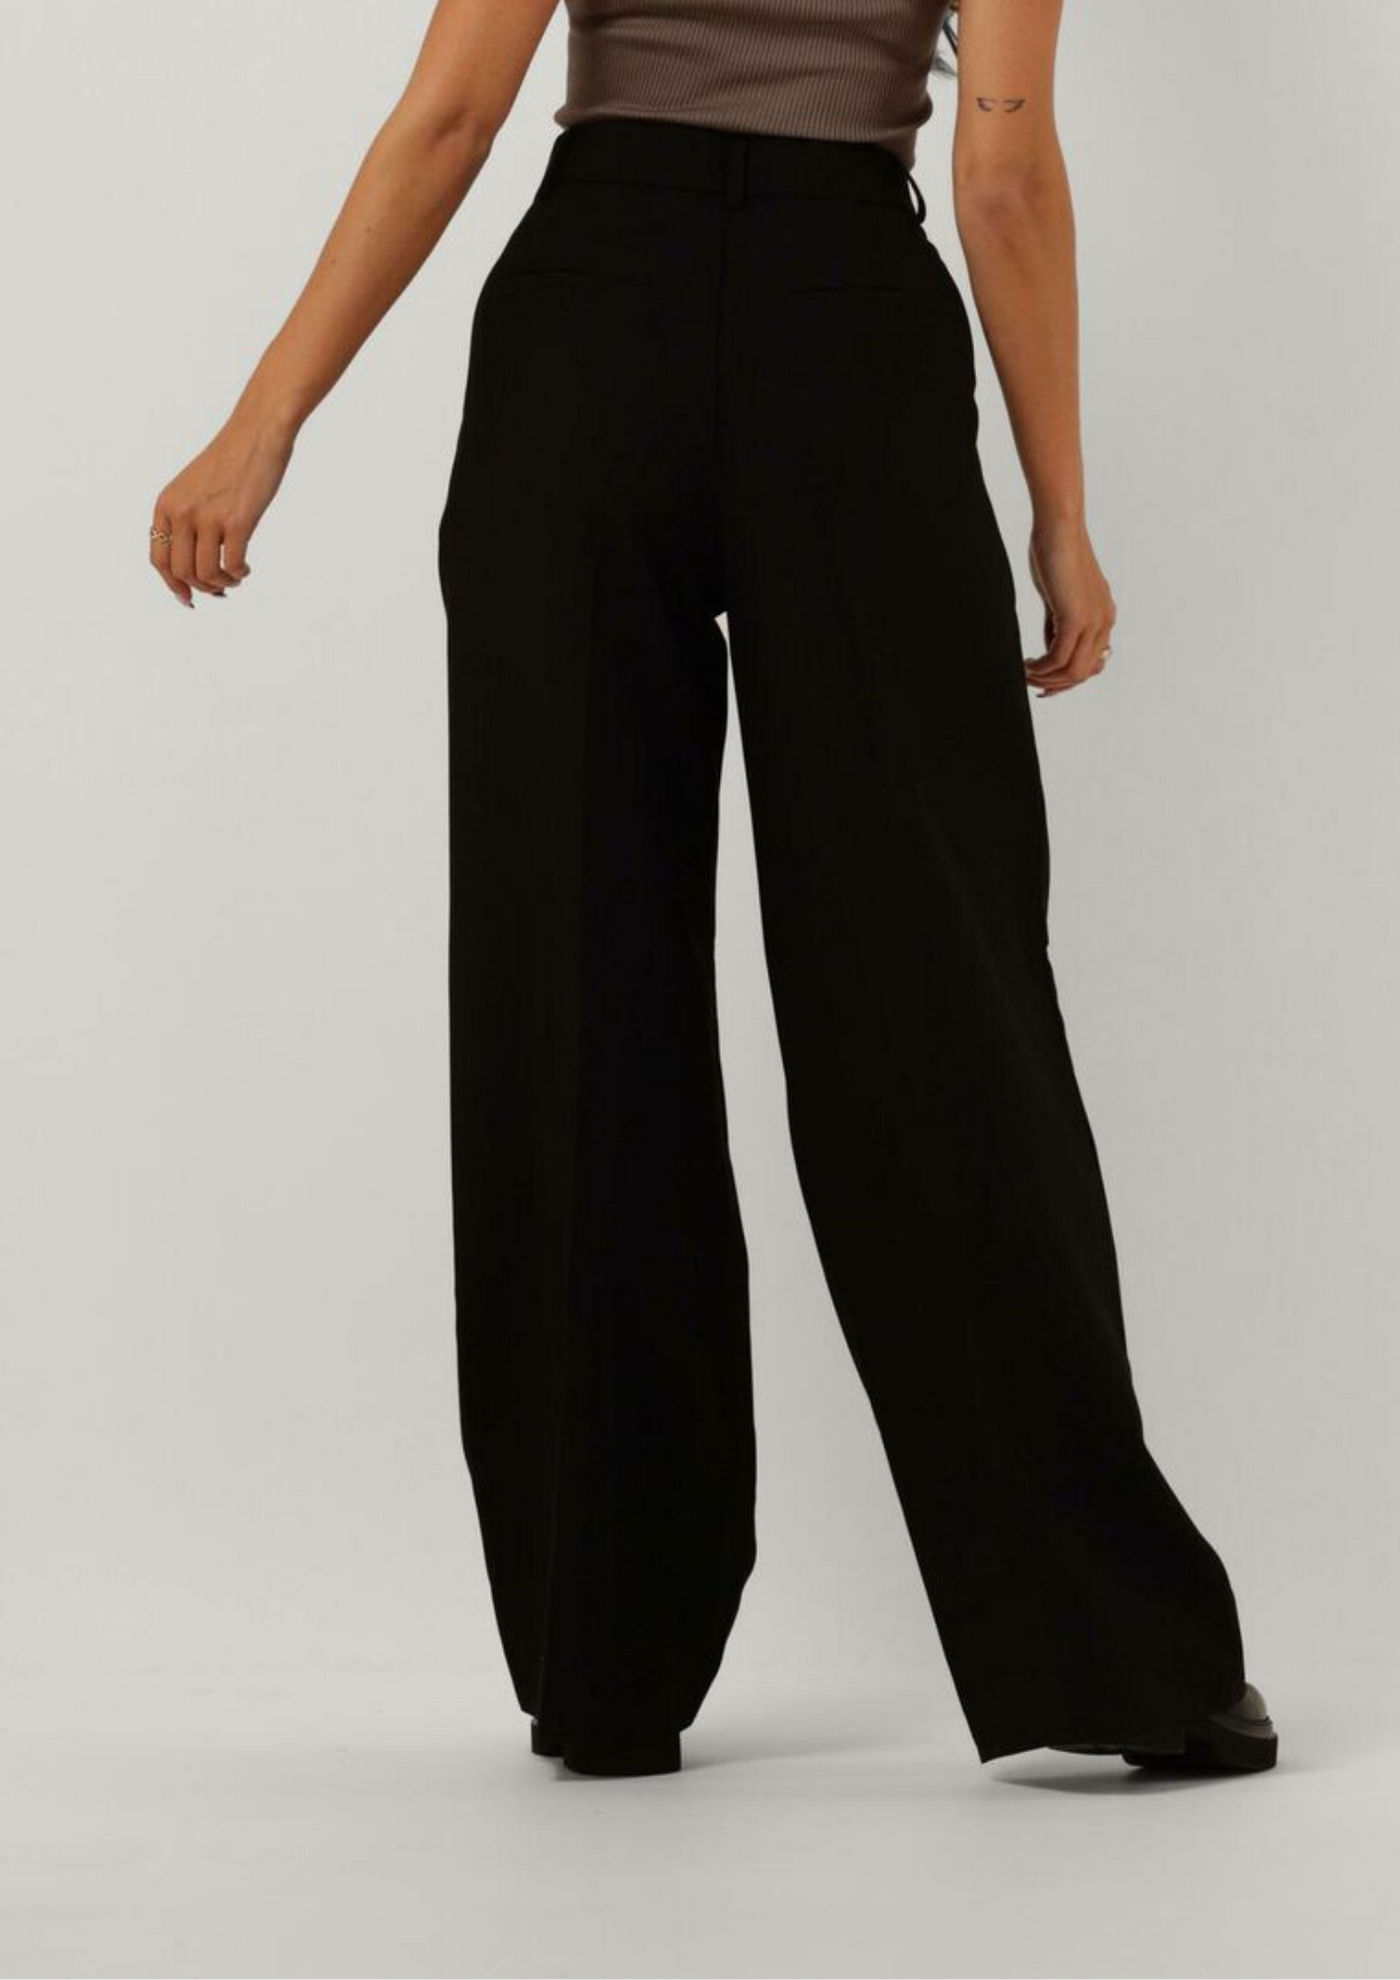 Co' Couture | VolaCC Long Pleat Pant Black